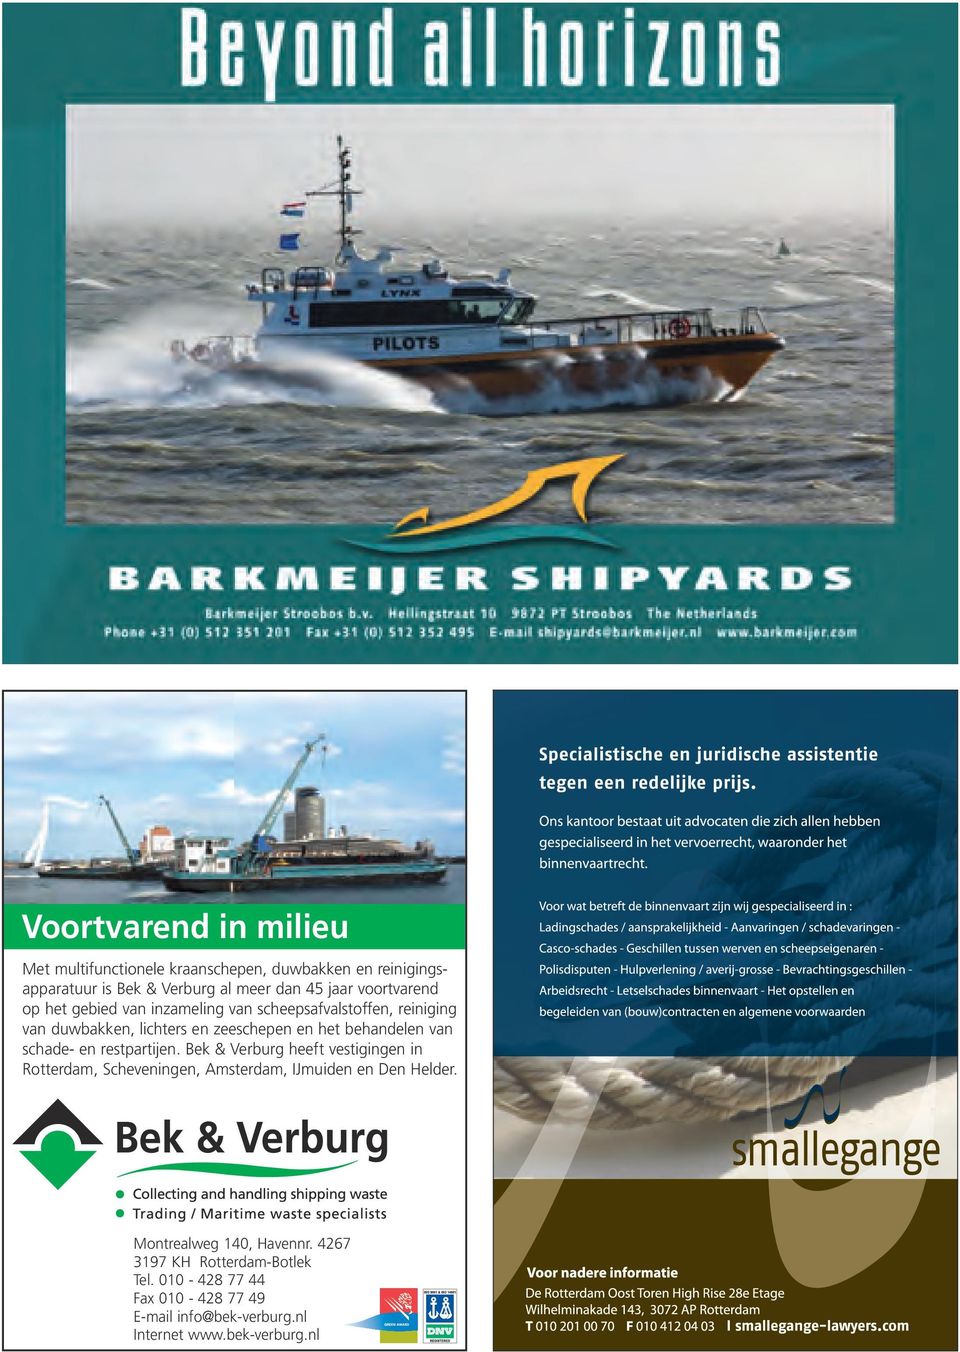 van schade- en restpartijen. Bek & Verburg heeft vestigingen in Rotterdam, Scheveningen, Amsterdam, IJmuiden en Den Helder.